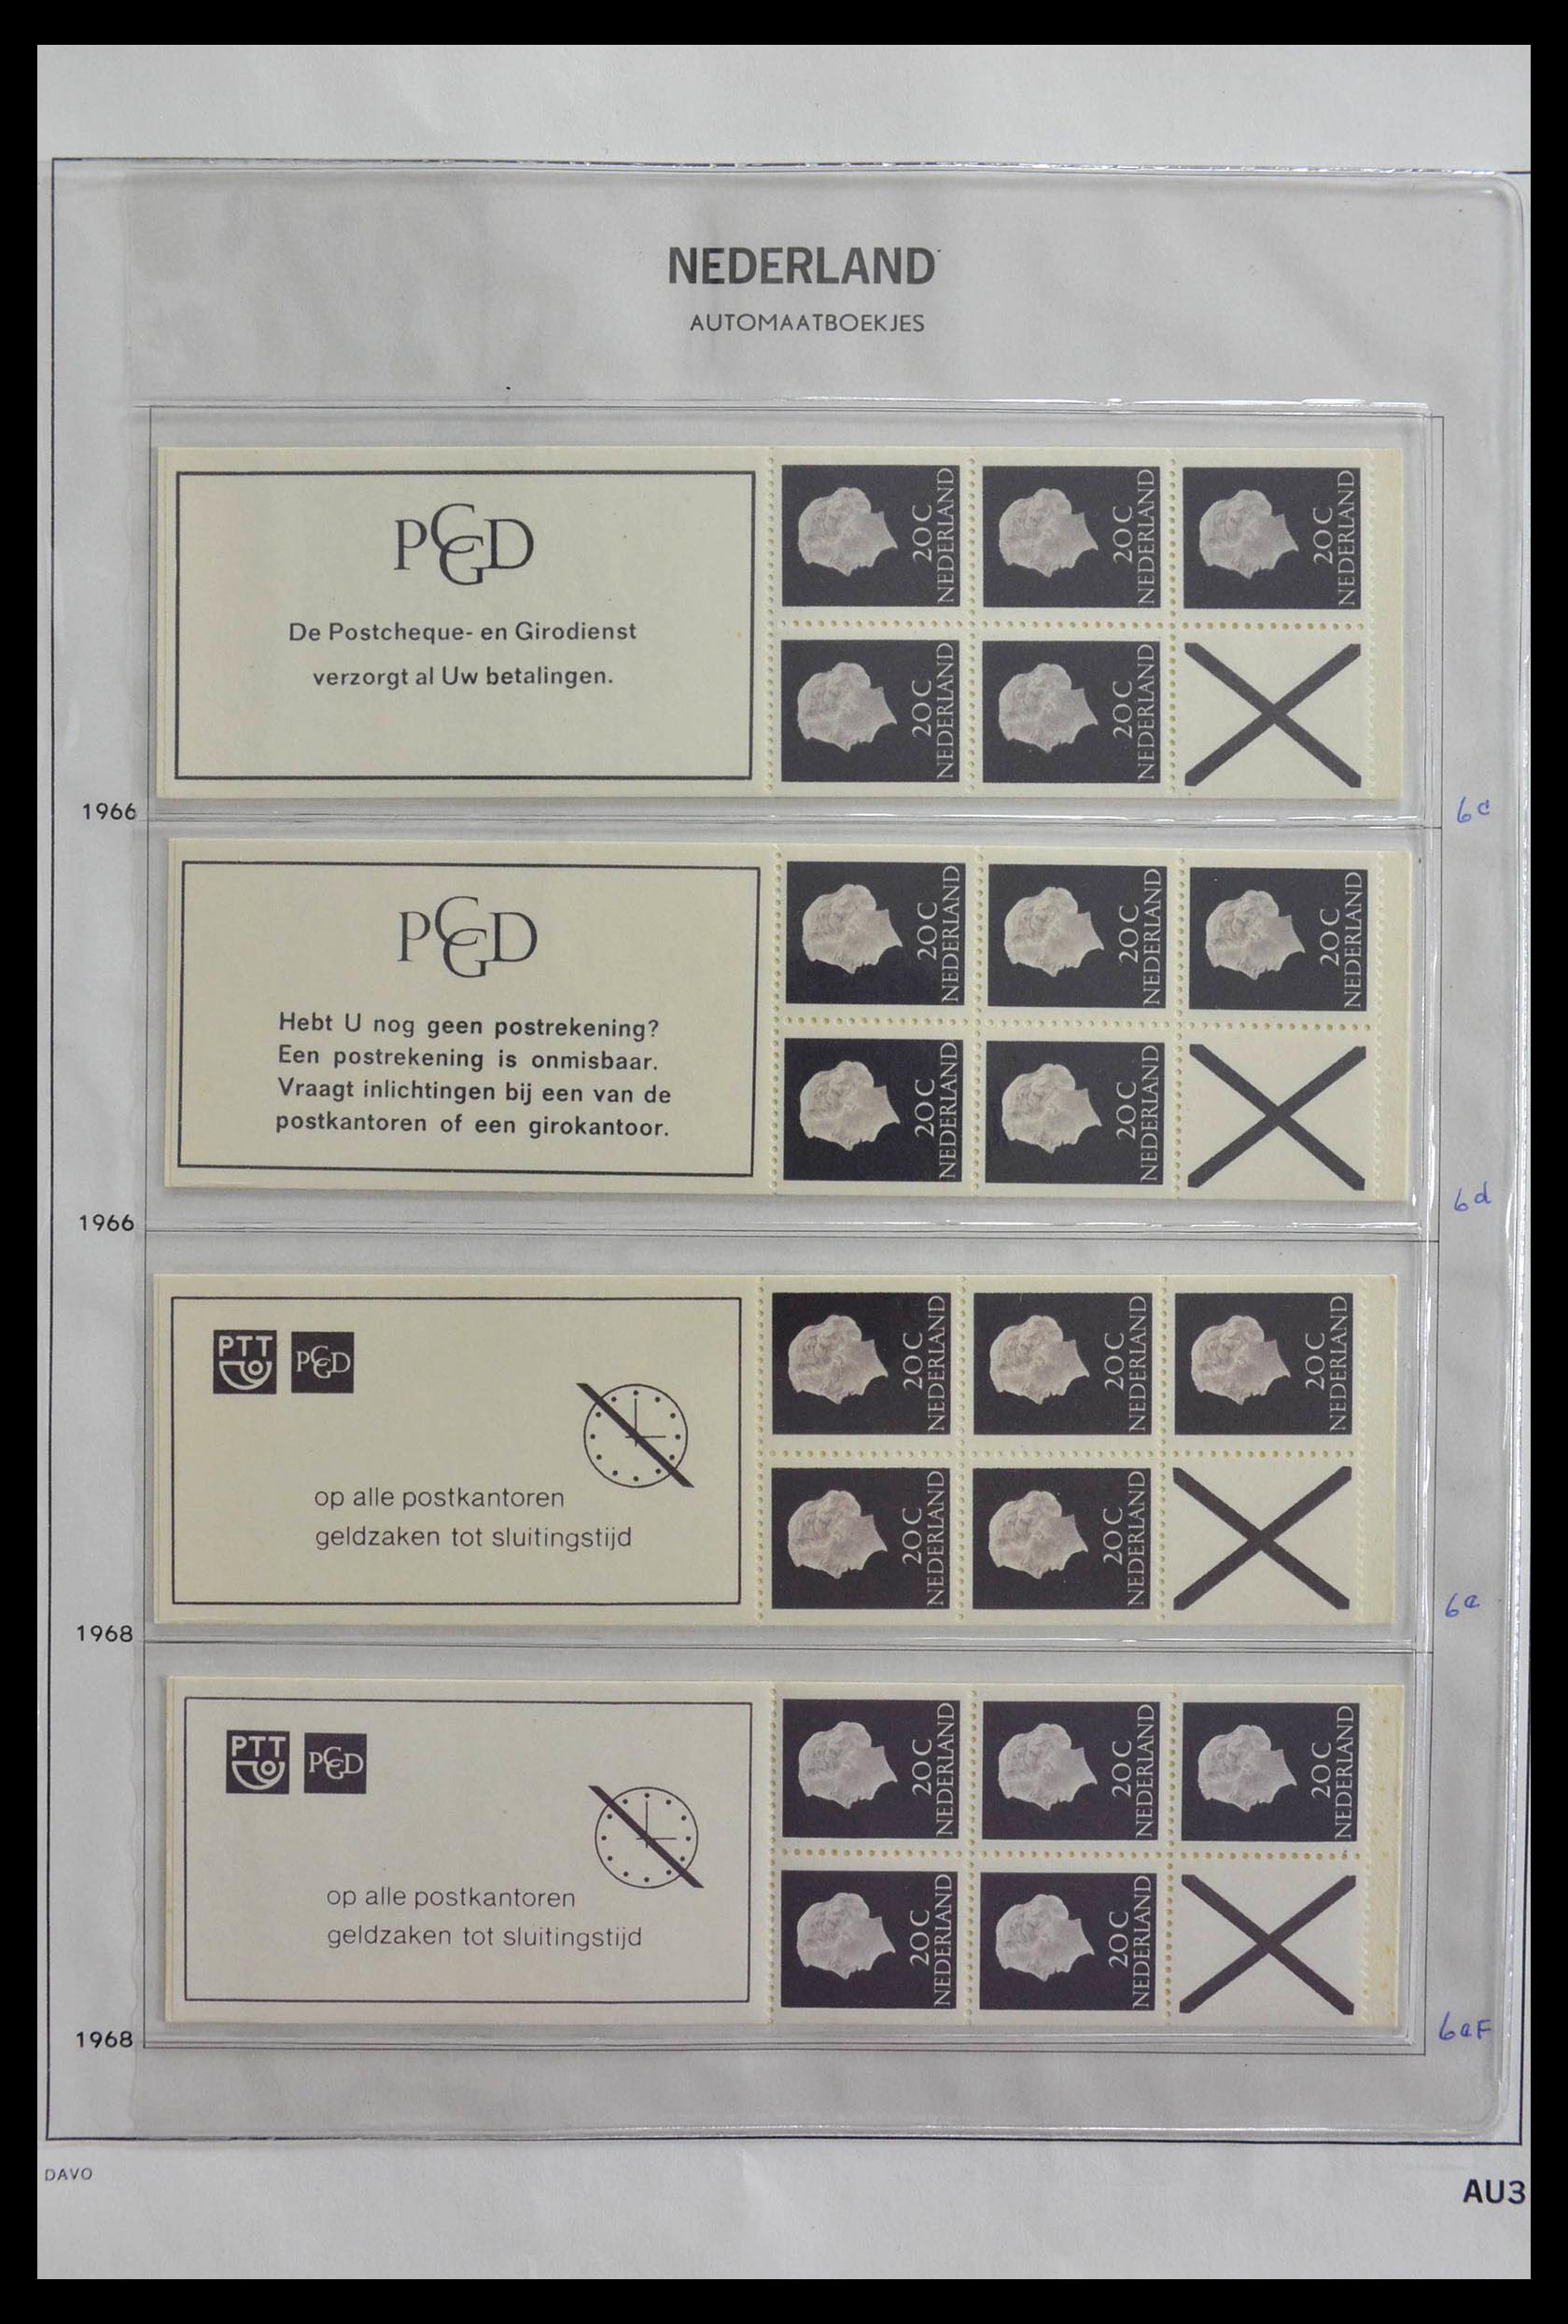 28853 003 - 28853 Netherlands stampbooklets 1964-2005.